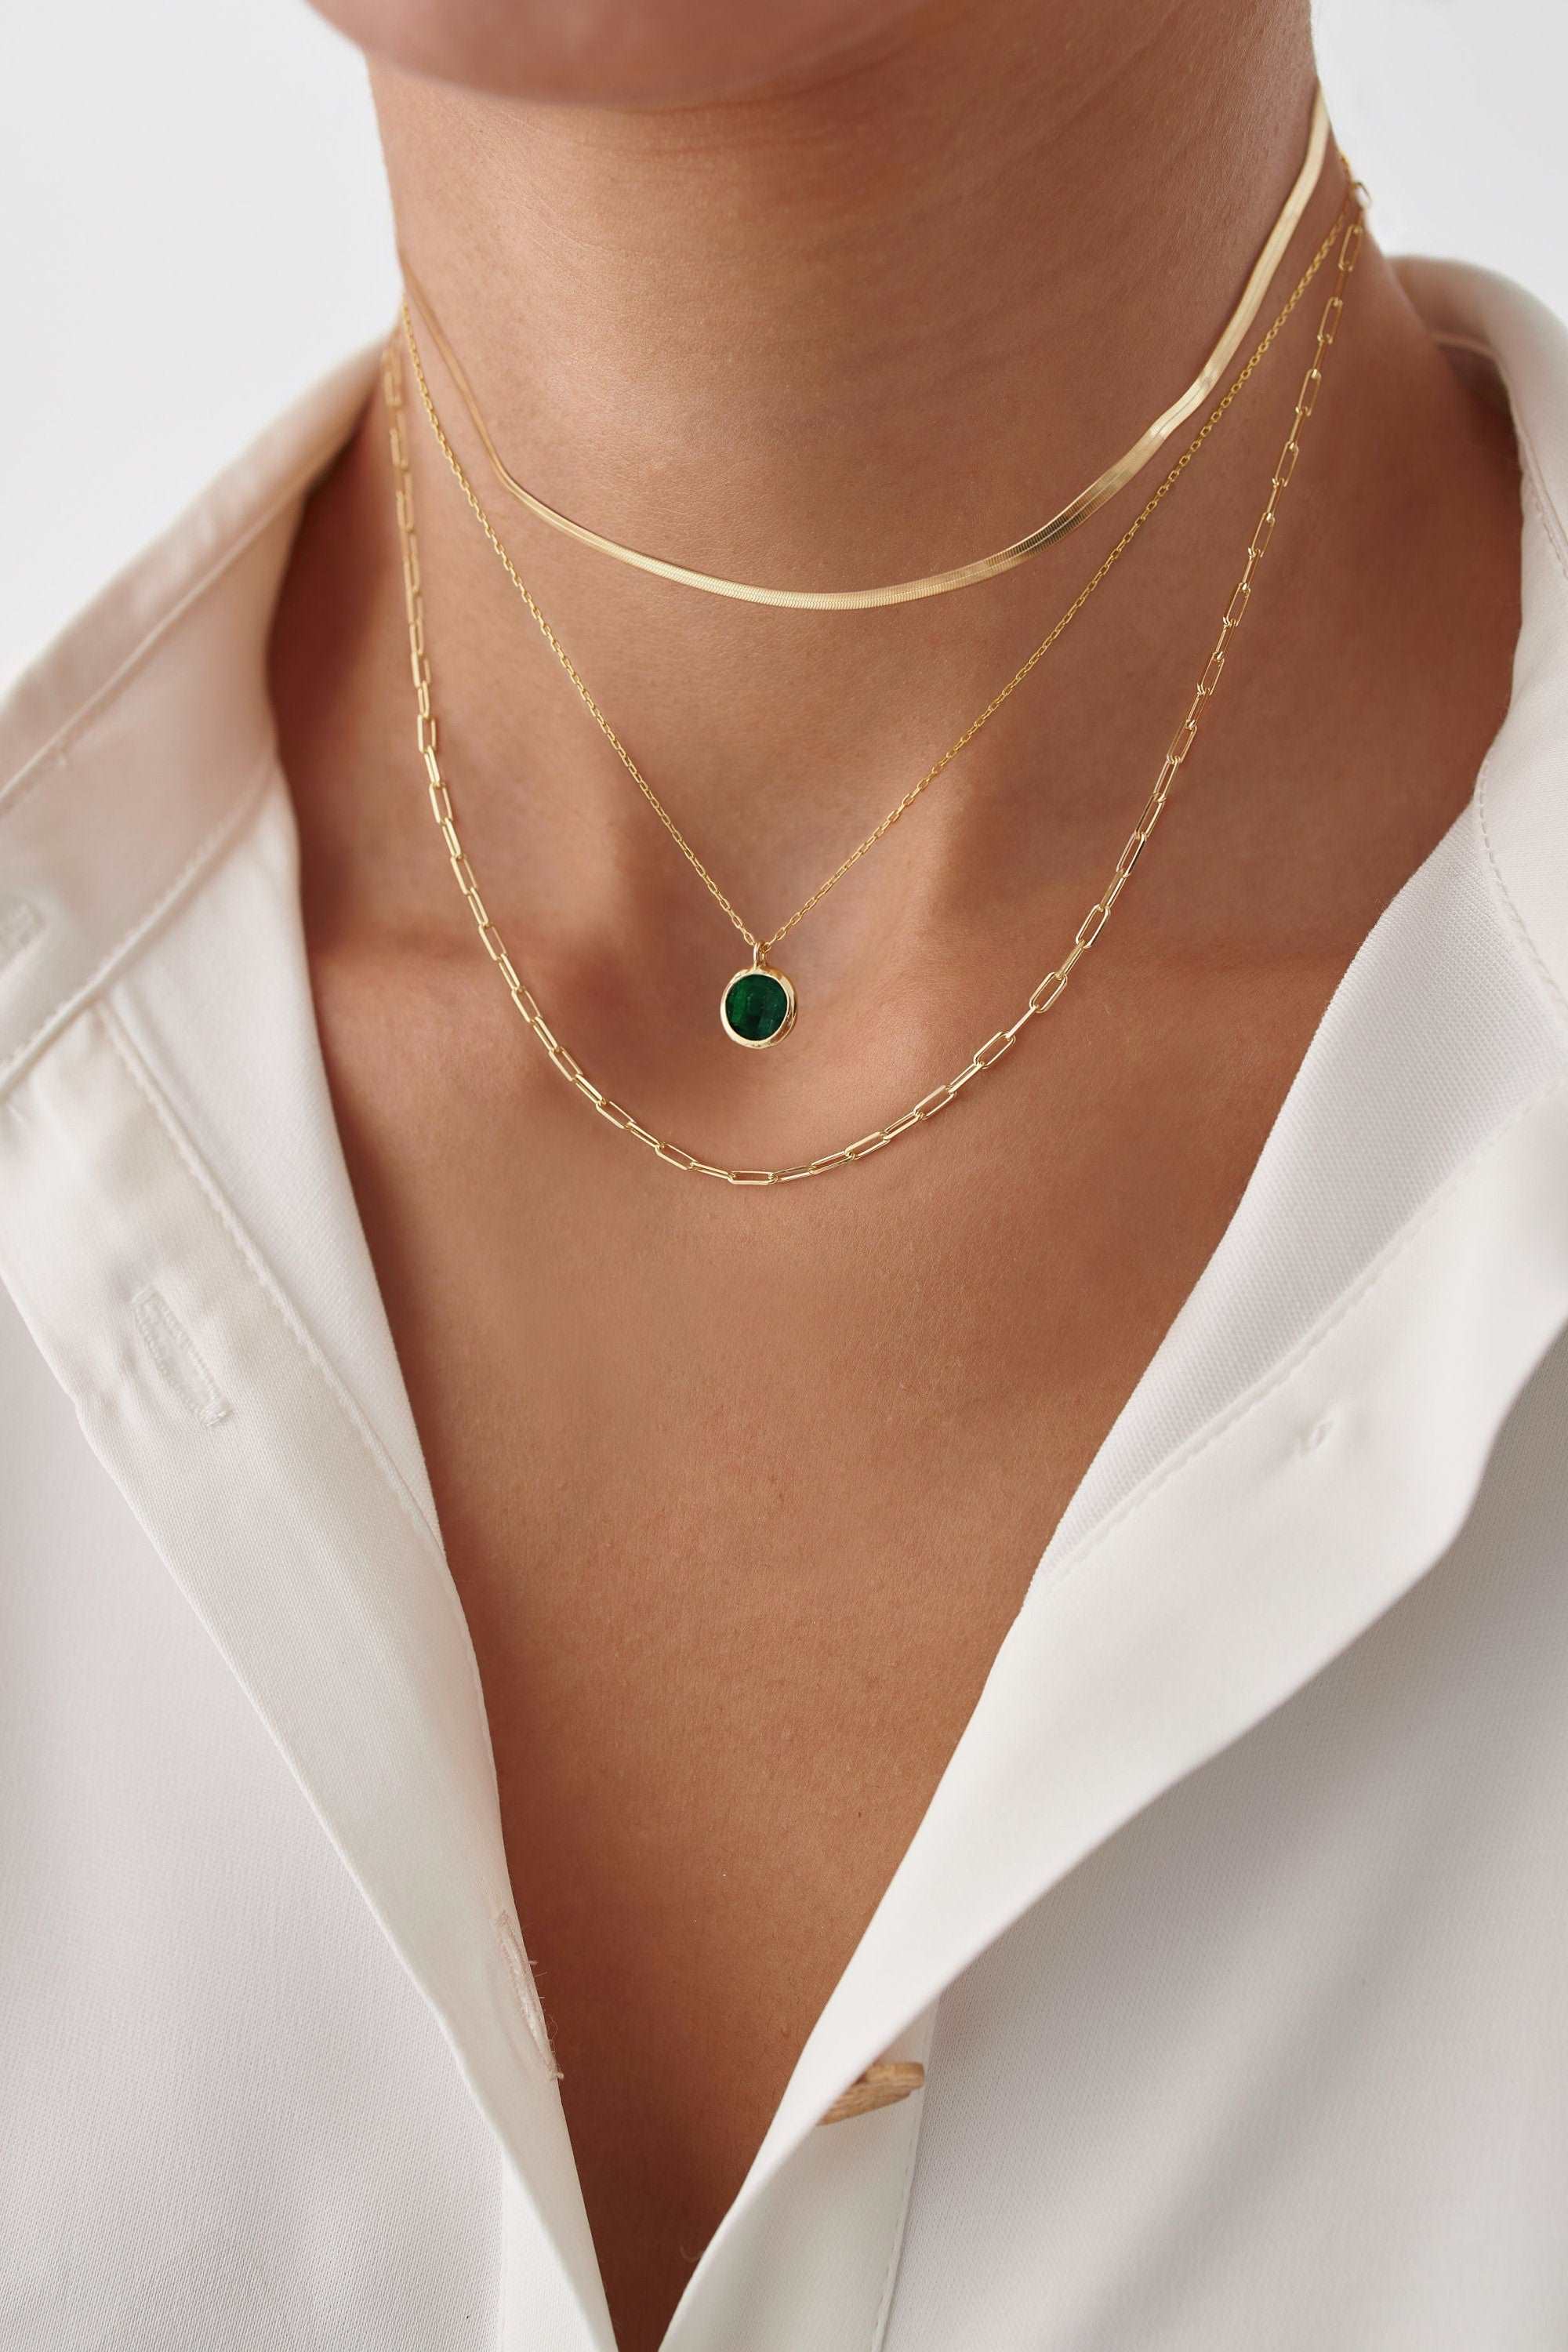 Dainty Birthstone Necklace | Gemstone Jewelry | Personalized Gift